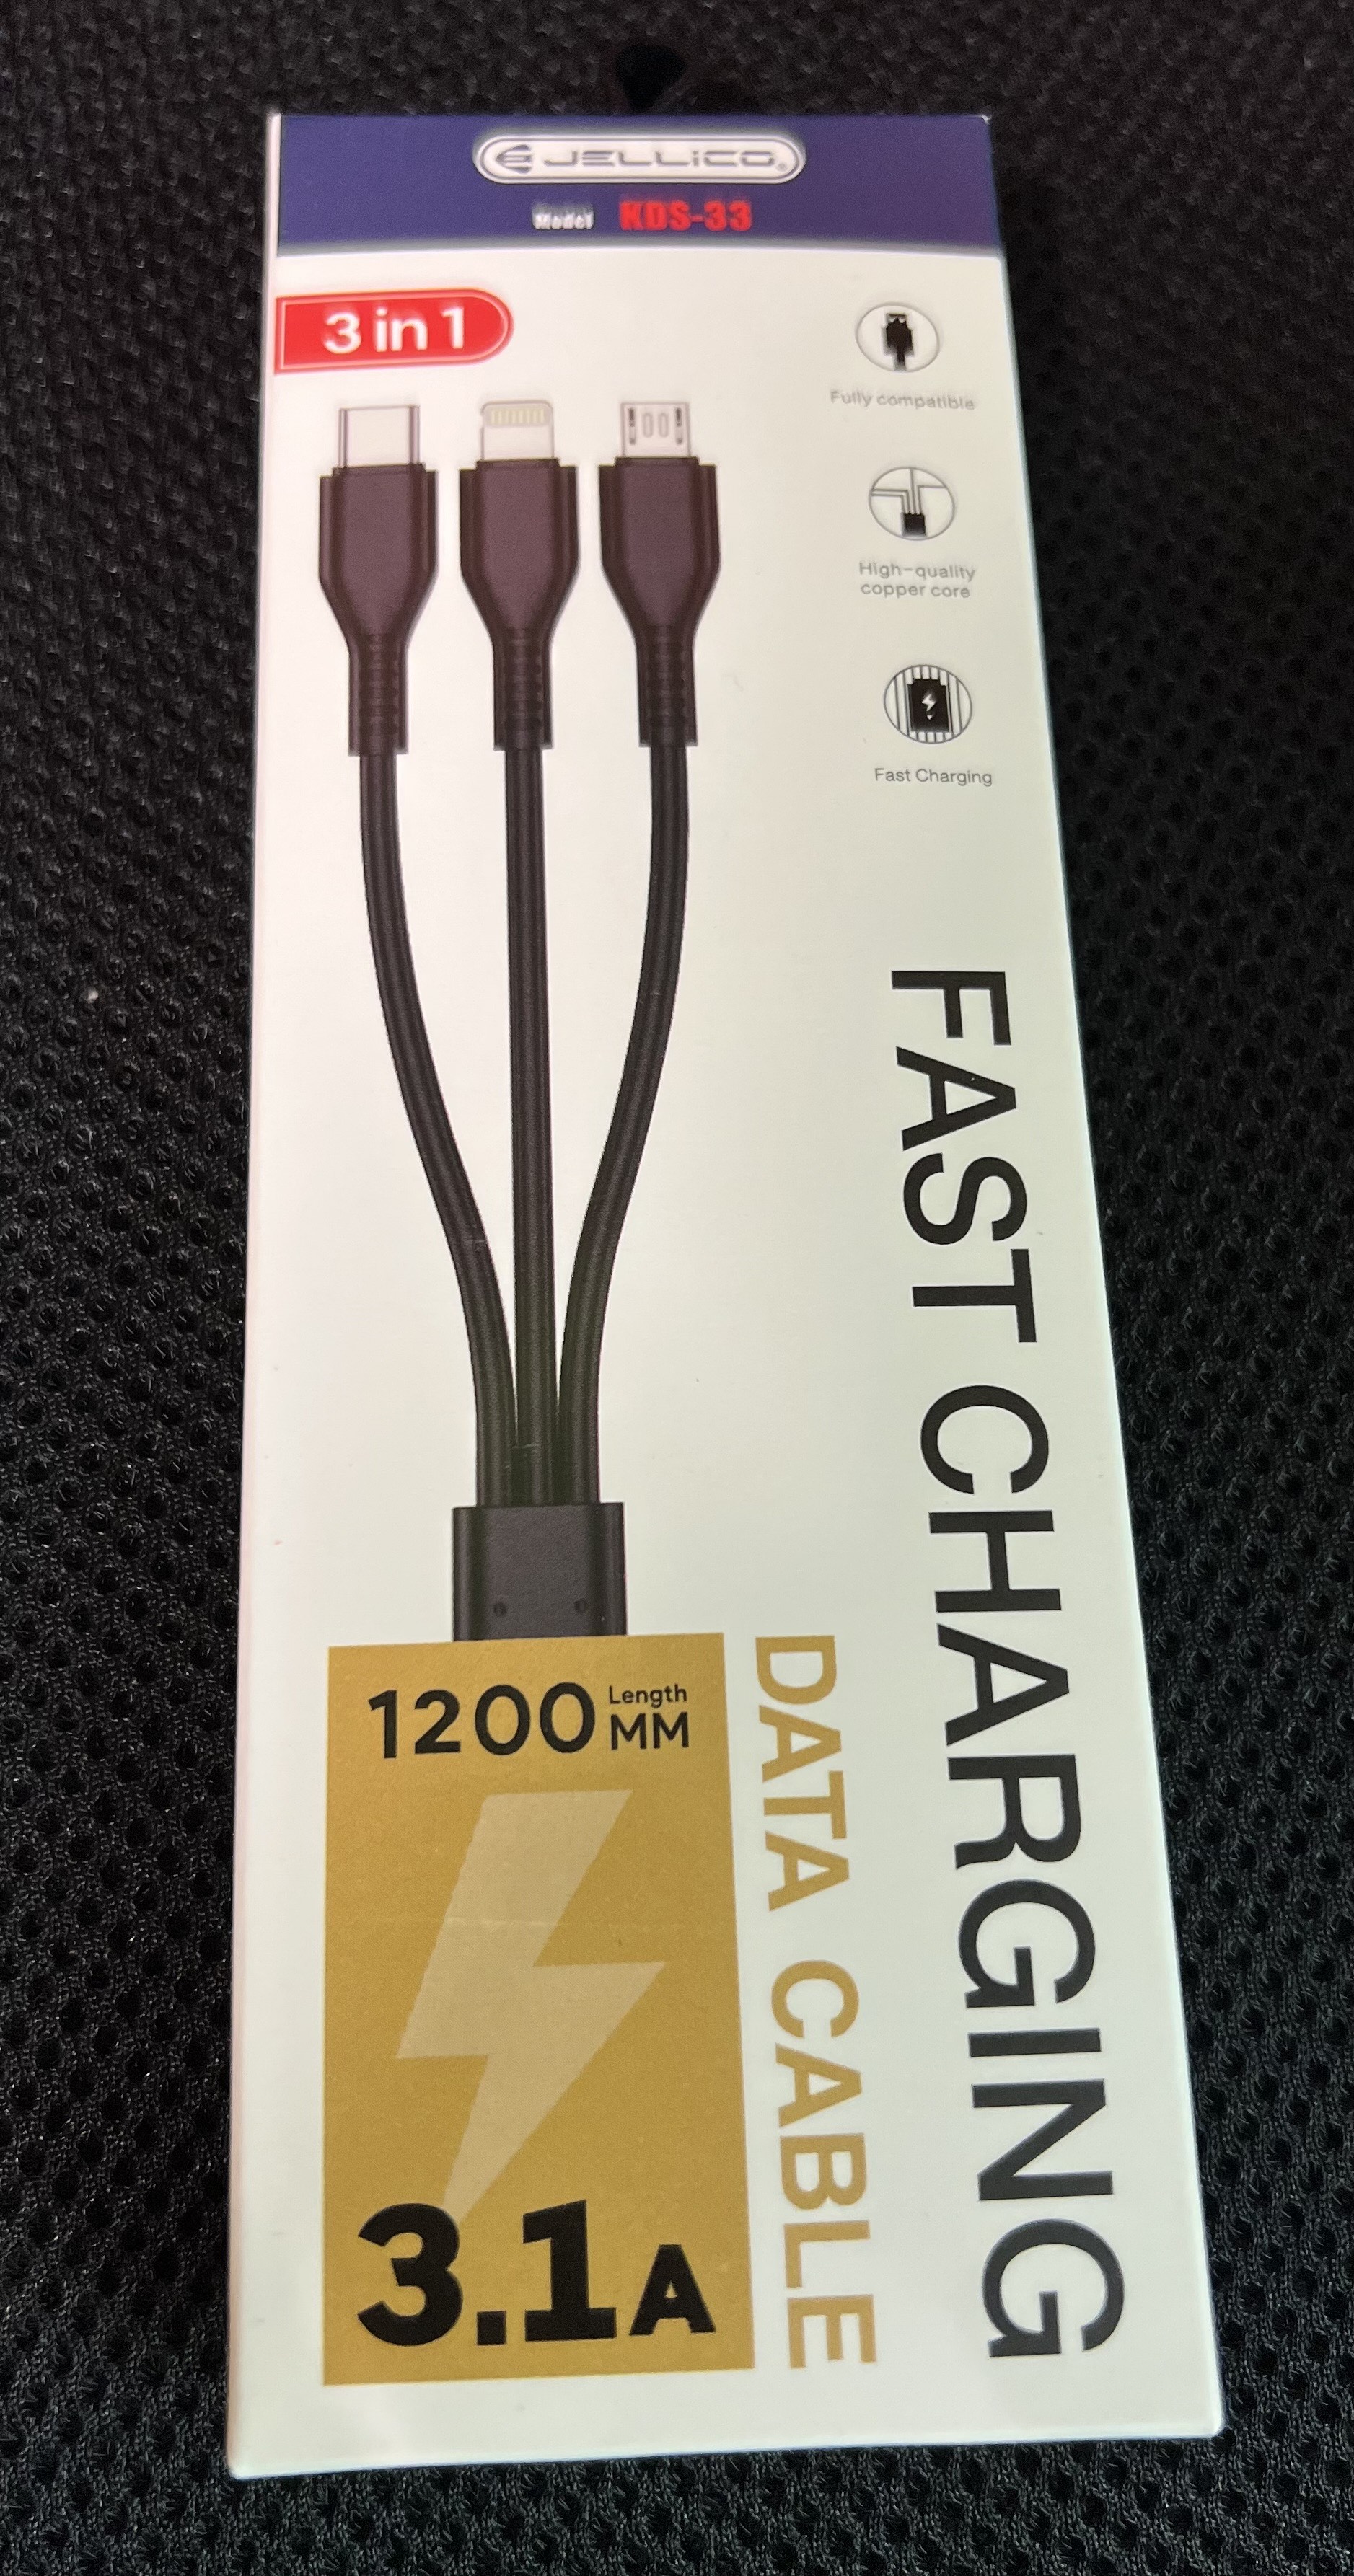 3v1 USB kabel JELLICO - KDS-33 3.1A lightning, USB-C, micro USB 1 metr - zvìtšit obrázek